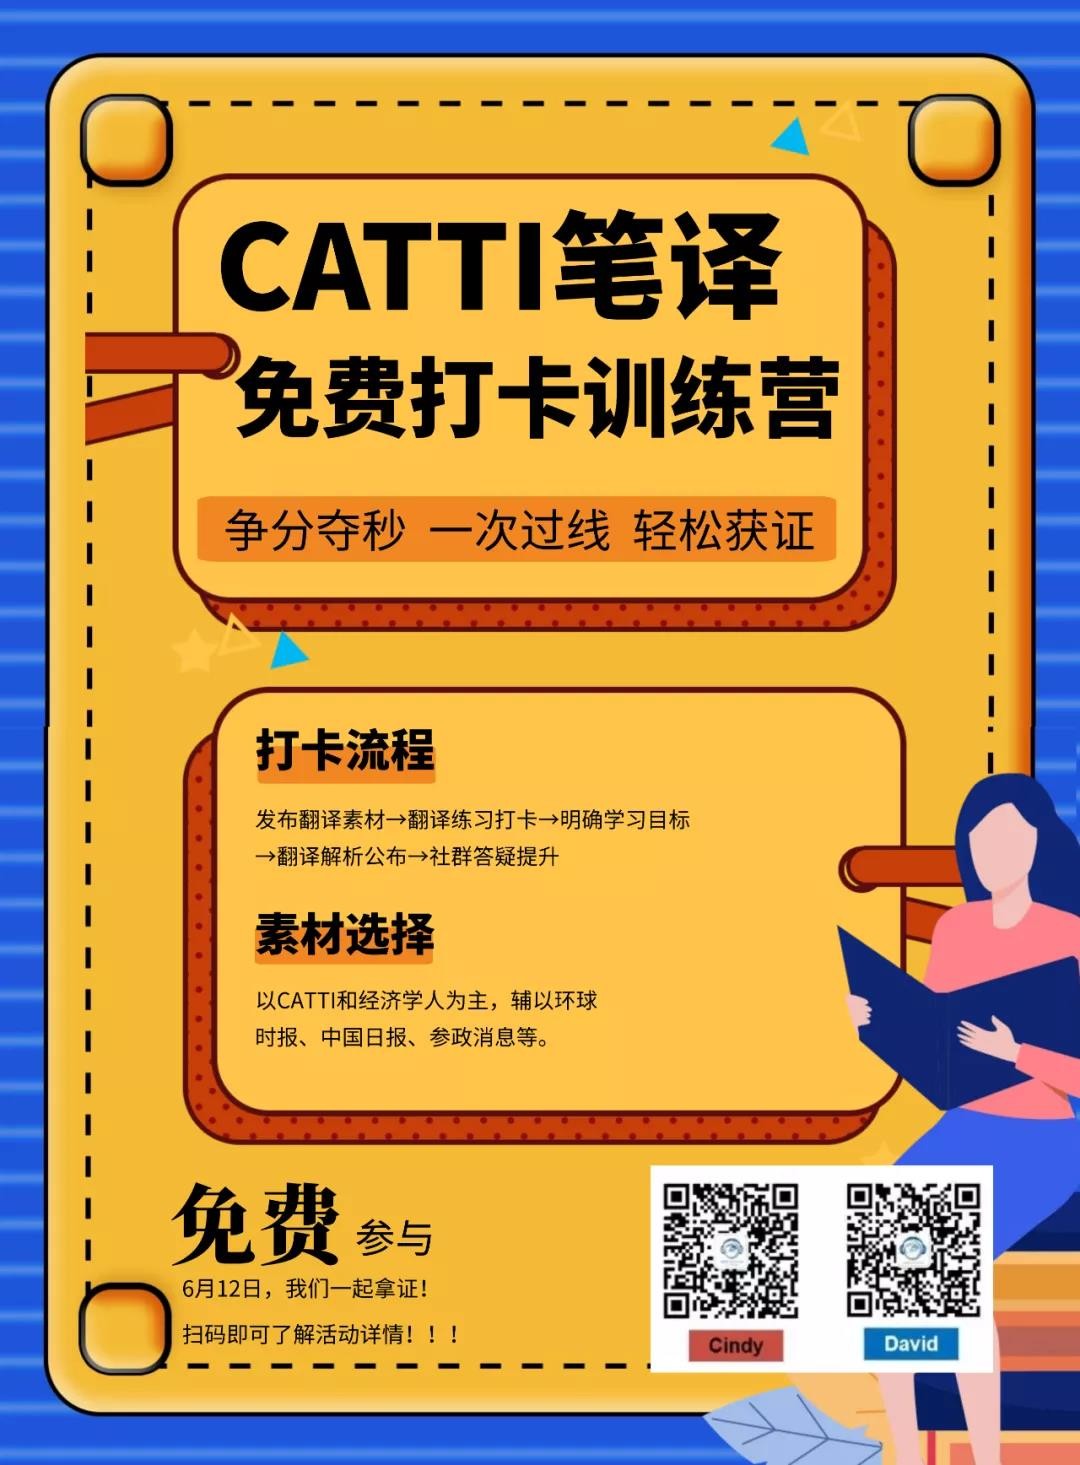 听世界外语 CATTI笔译打卡训练营